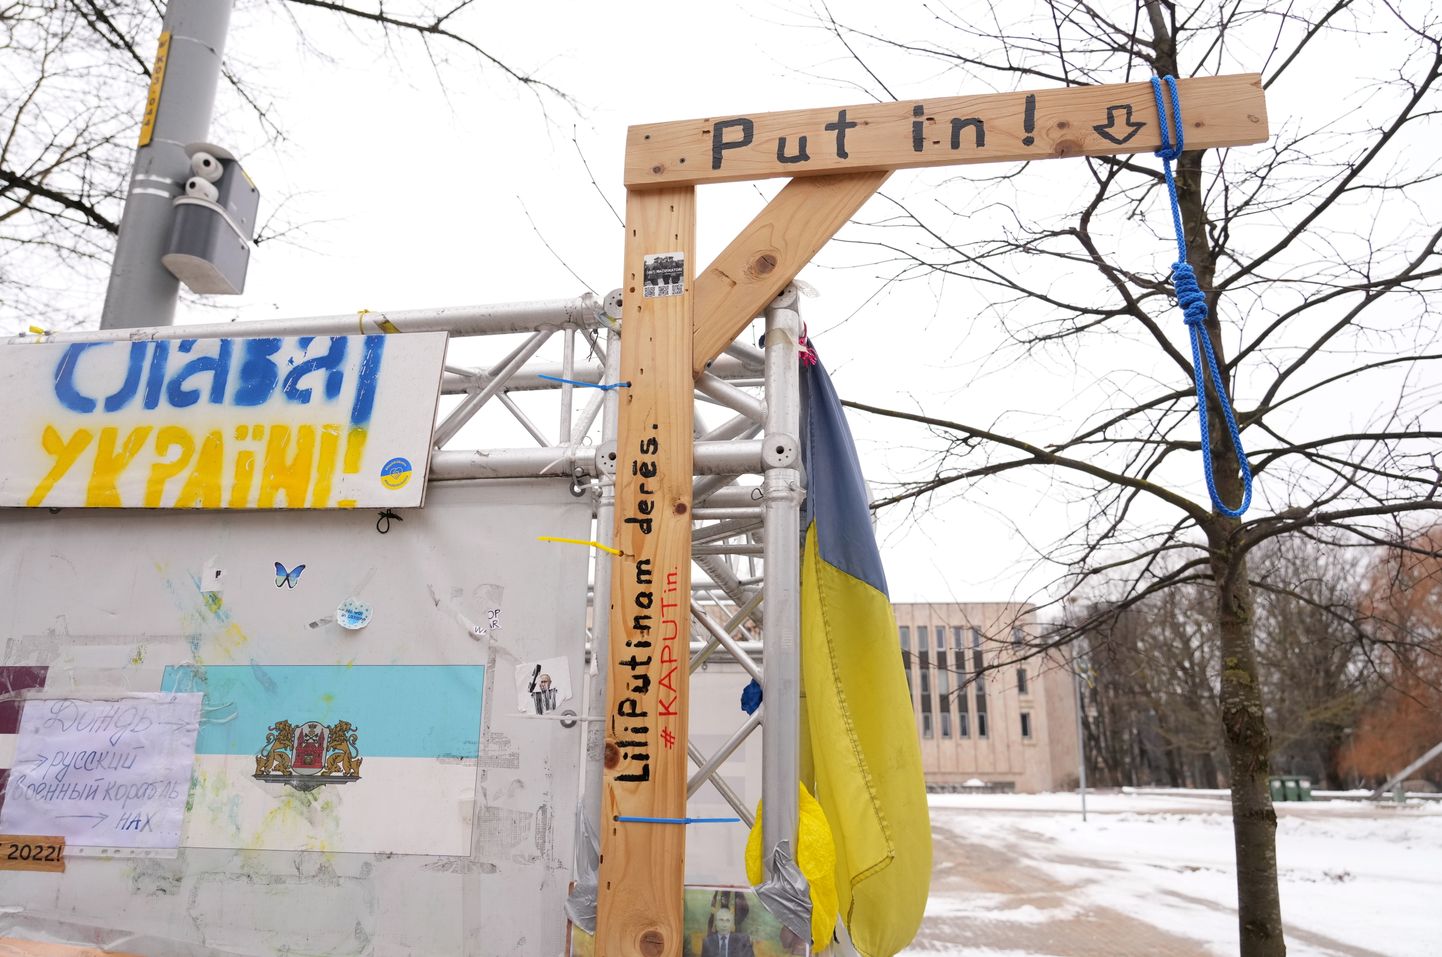 Stends ar improvizētām karātavām un plakātiem Ukrainas atbalstam iepretī Krievijas vēstniecībai.